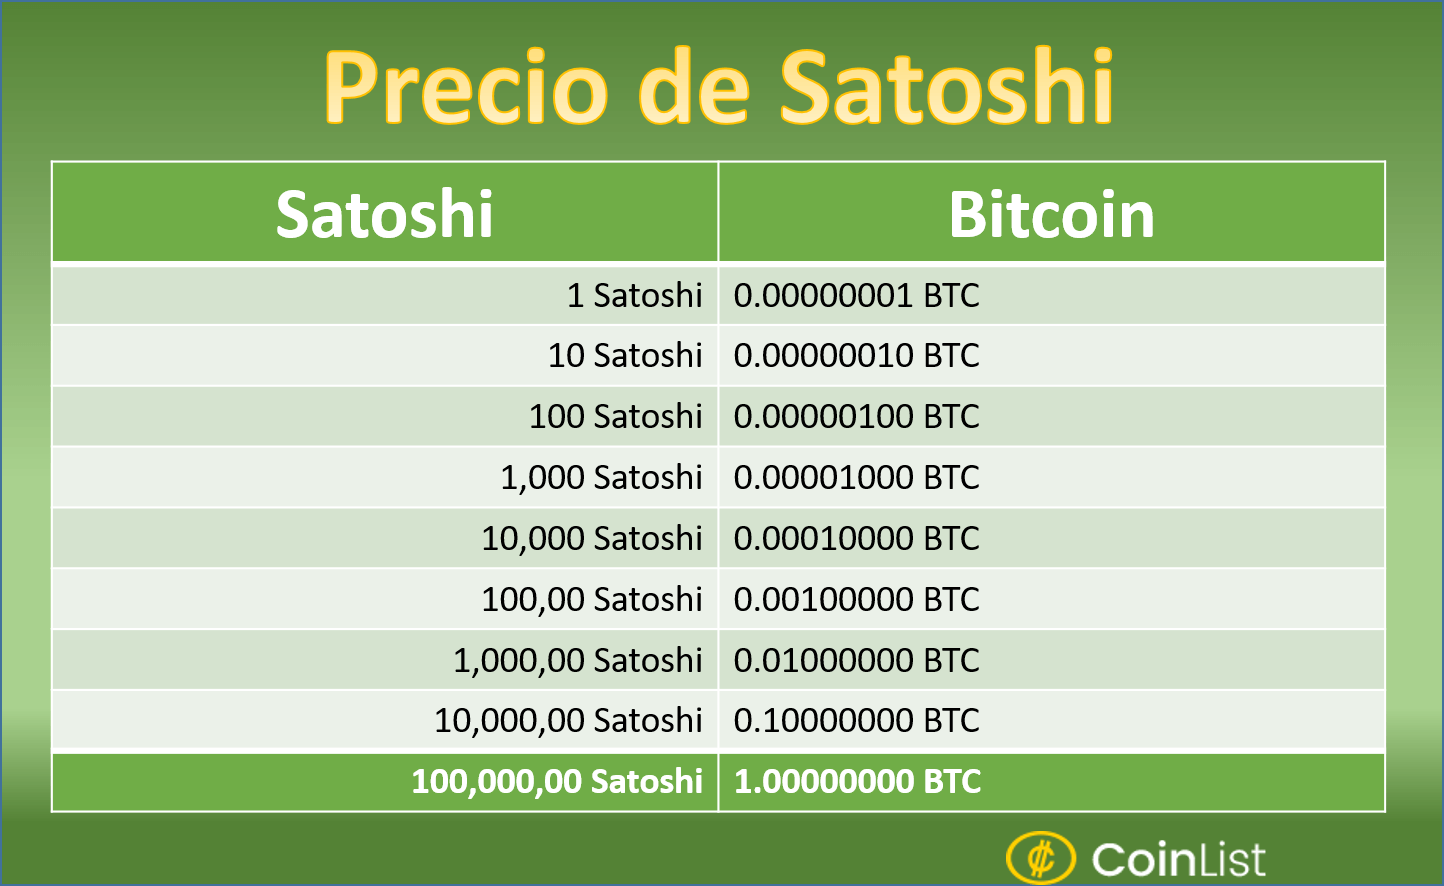 cuantos satoshis es un bitcoin